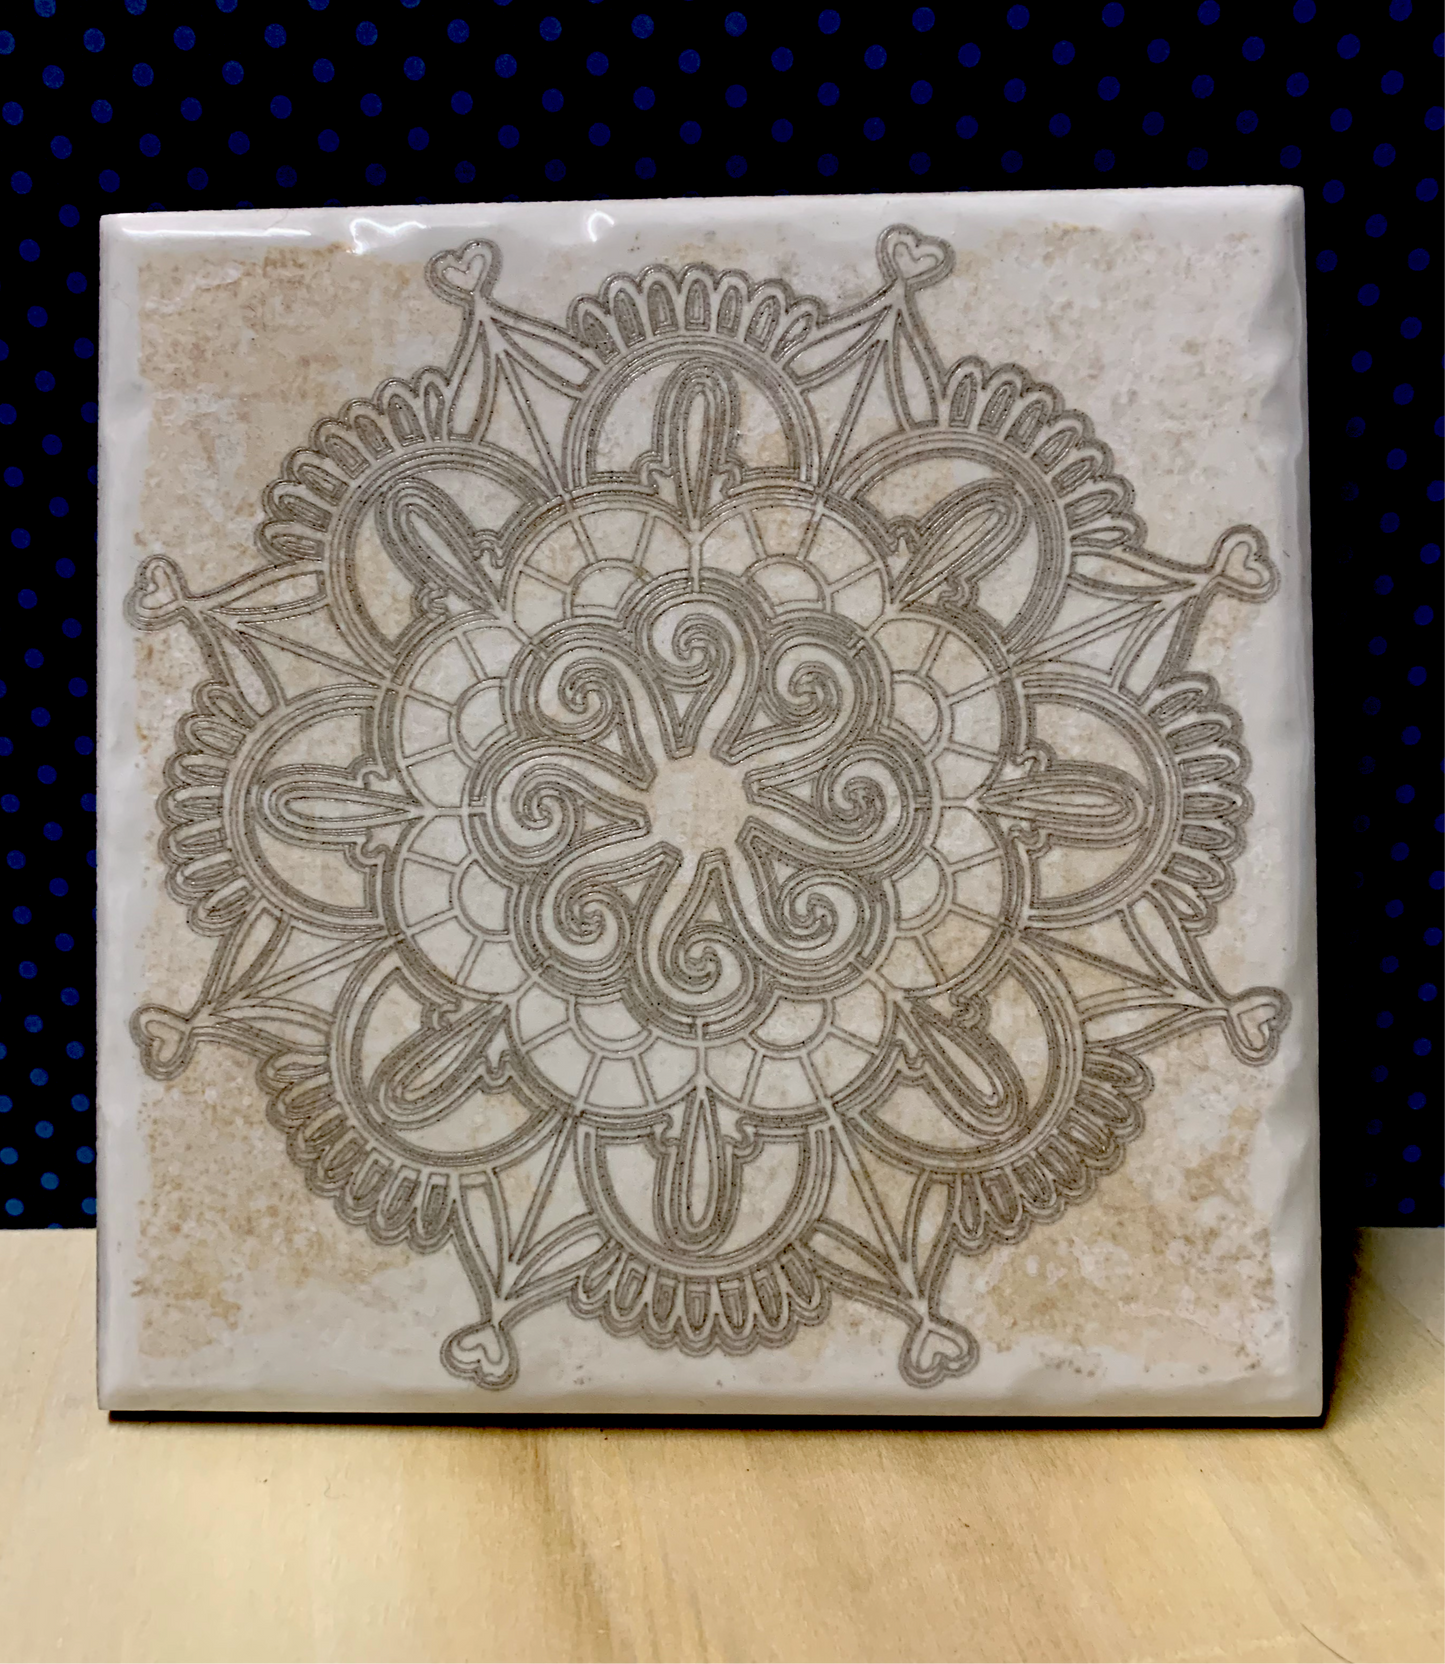 Custom engraved 6” by 6” terracotta tiles